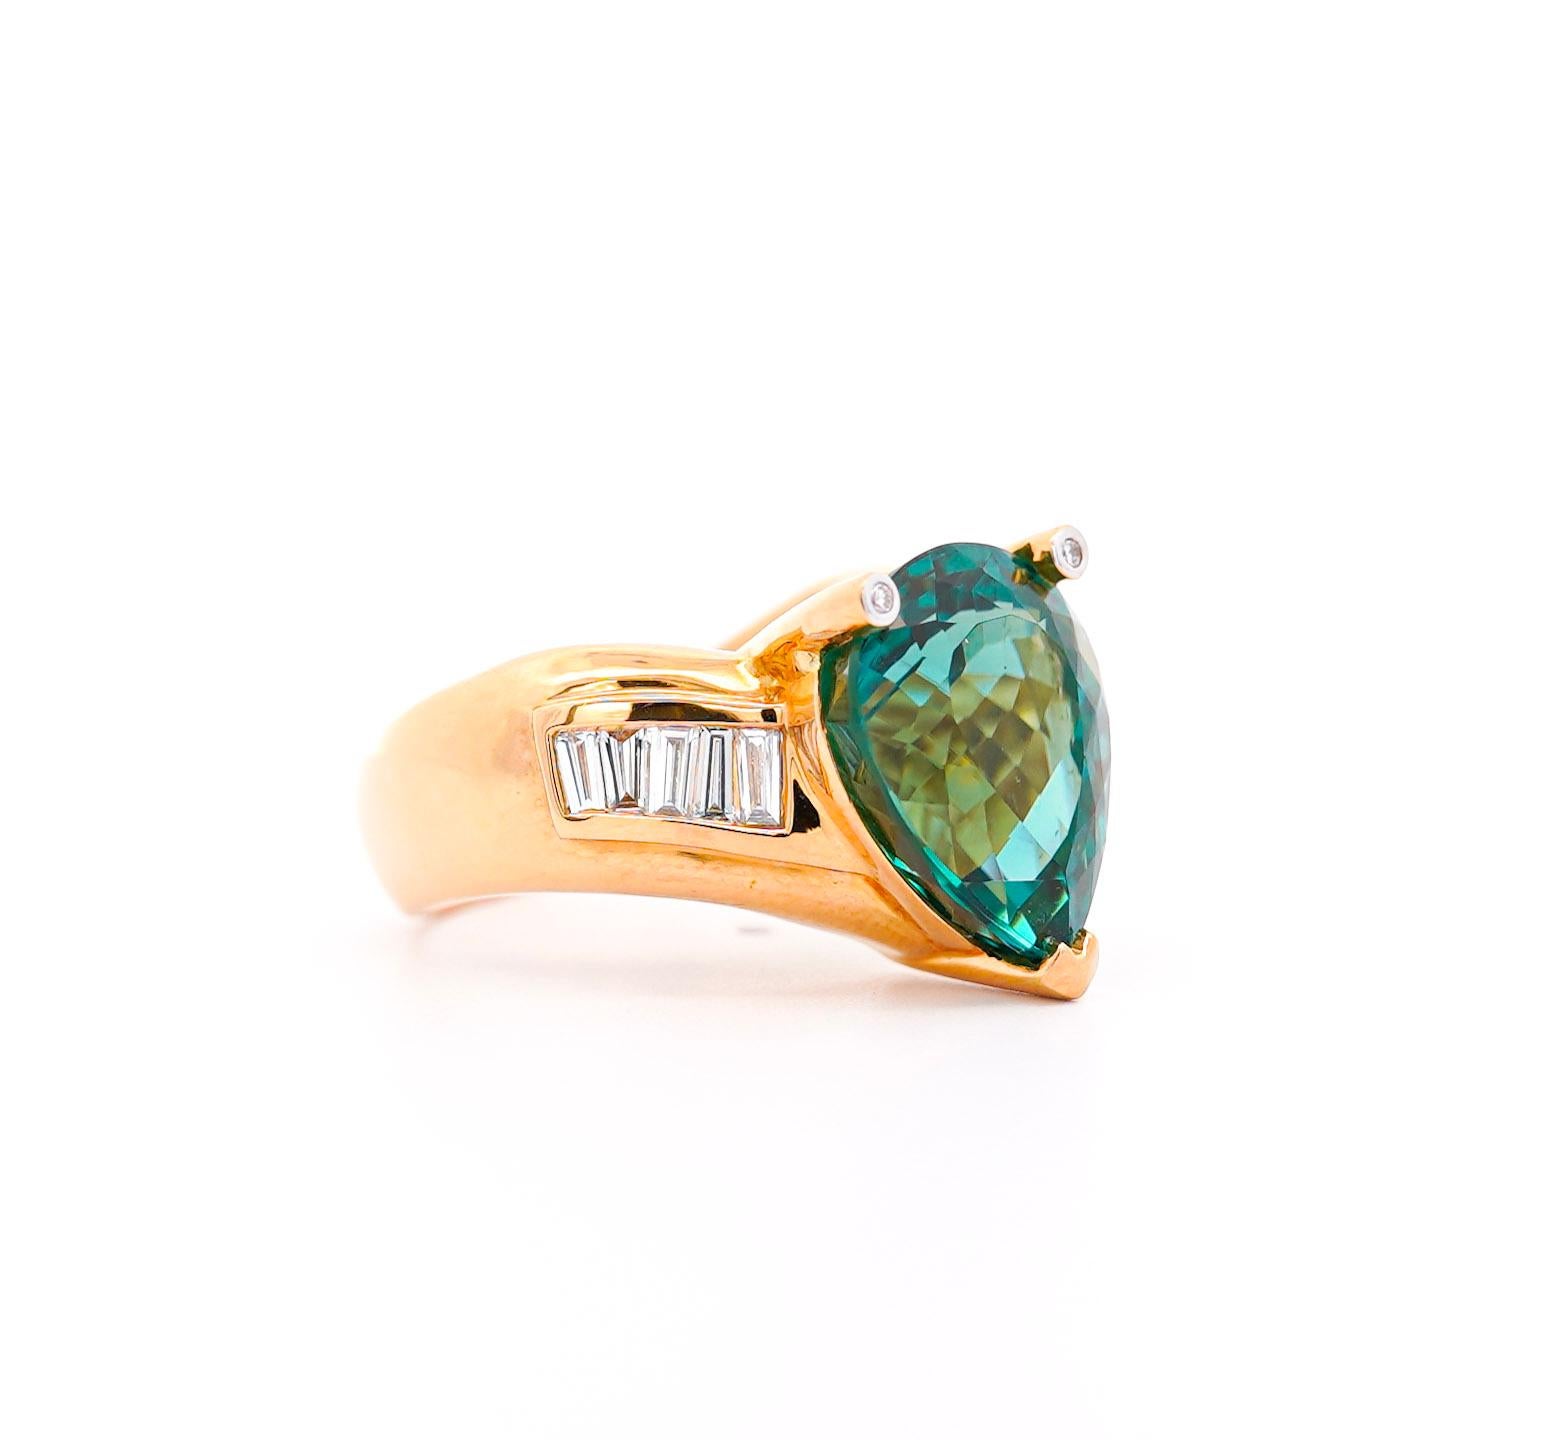 GIA-zertifizierter Ring mit 11 Karat bläulich-grünem Turmalin und weißem Diamanten in 18 Karat Gelbgold. Der geschwungene V-förmige Ringschaft ergänzt den Mittelstein im Birnenschliff. Fixiert mit Seitensteinen aus natürlichen Diamanten im